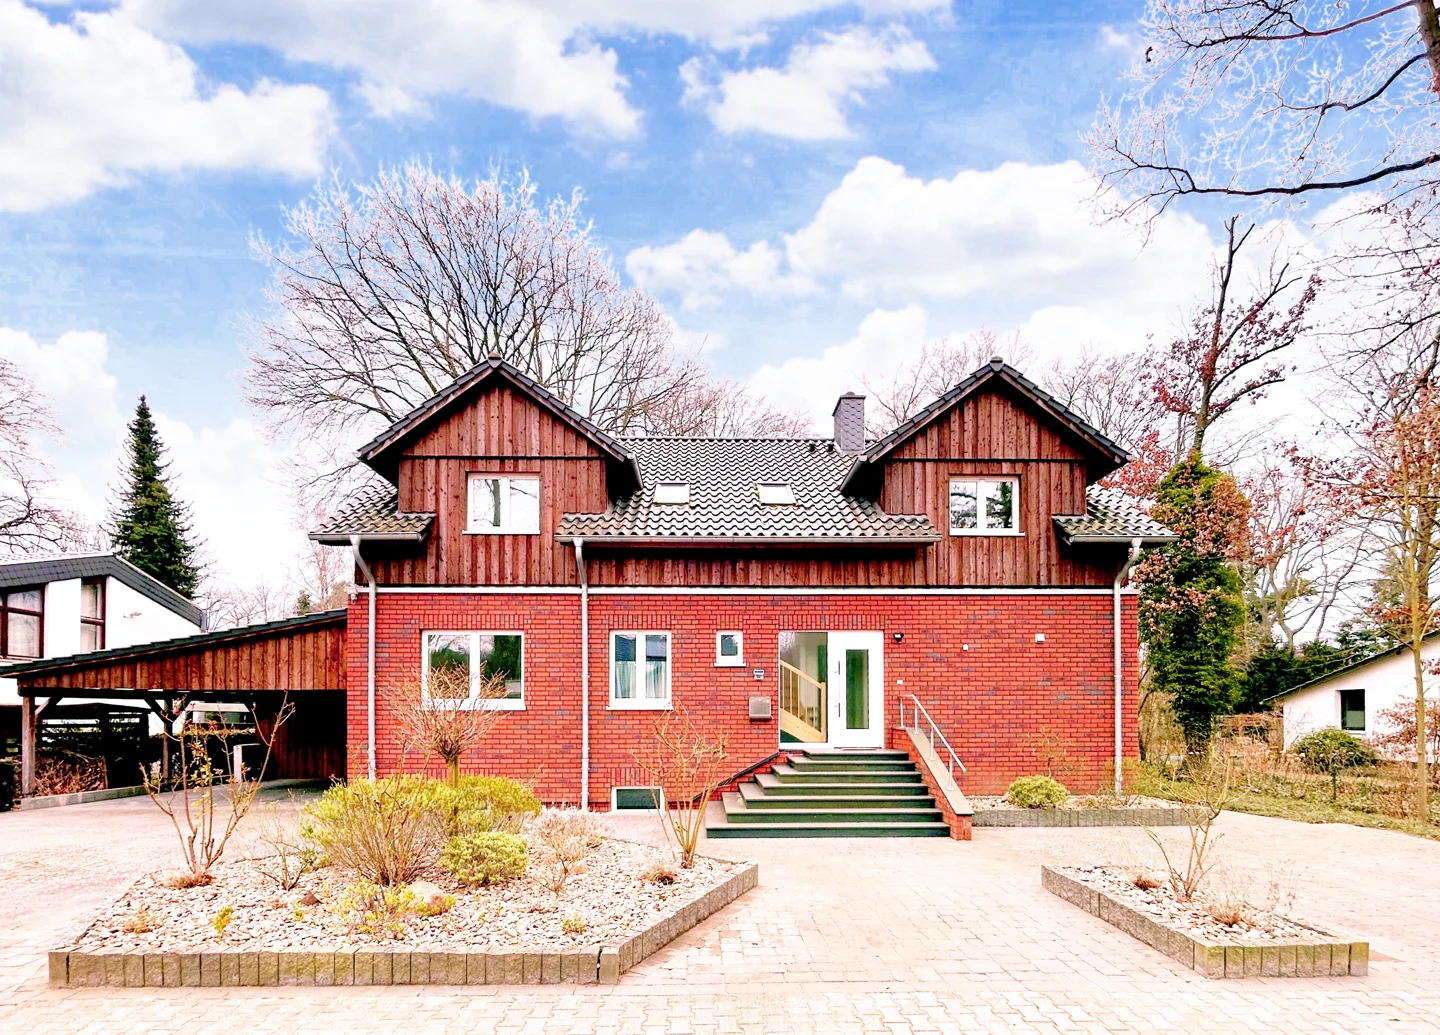 Ihr neues Zuhause mit Traumgrundstück in bester Lage von Adendorf !